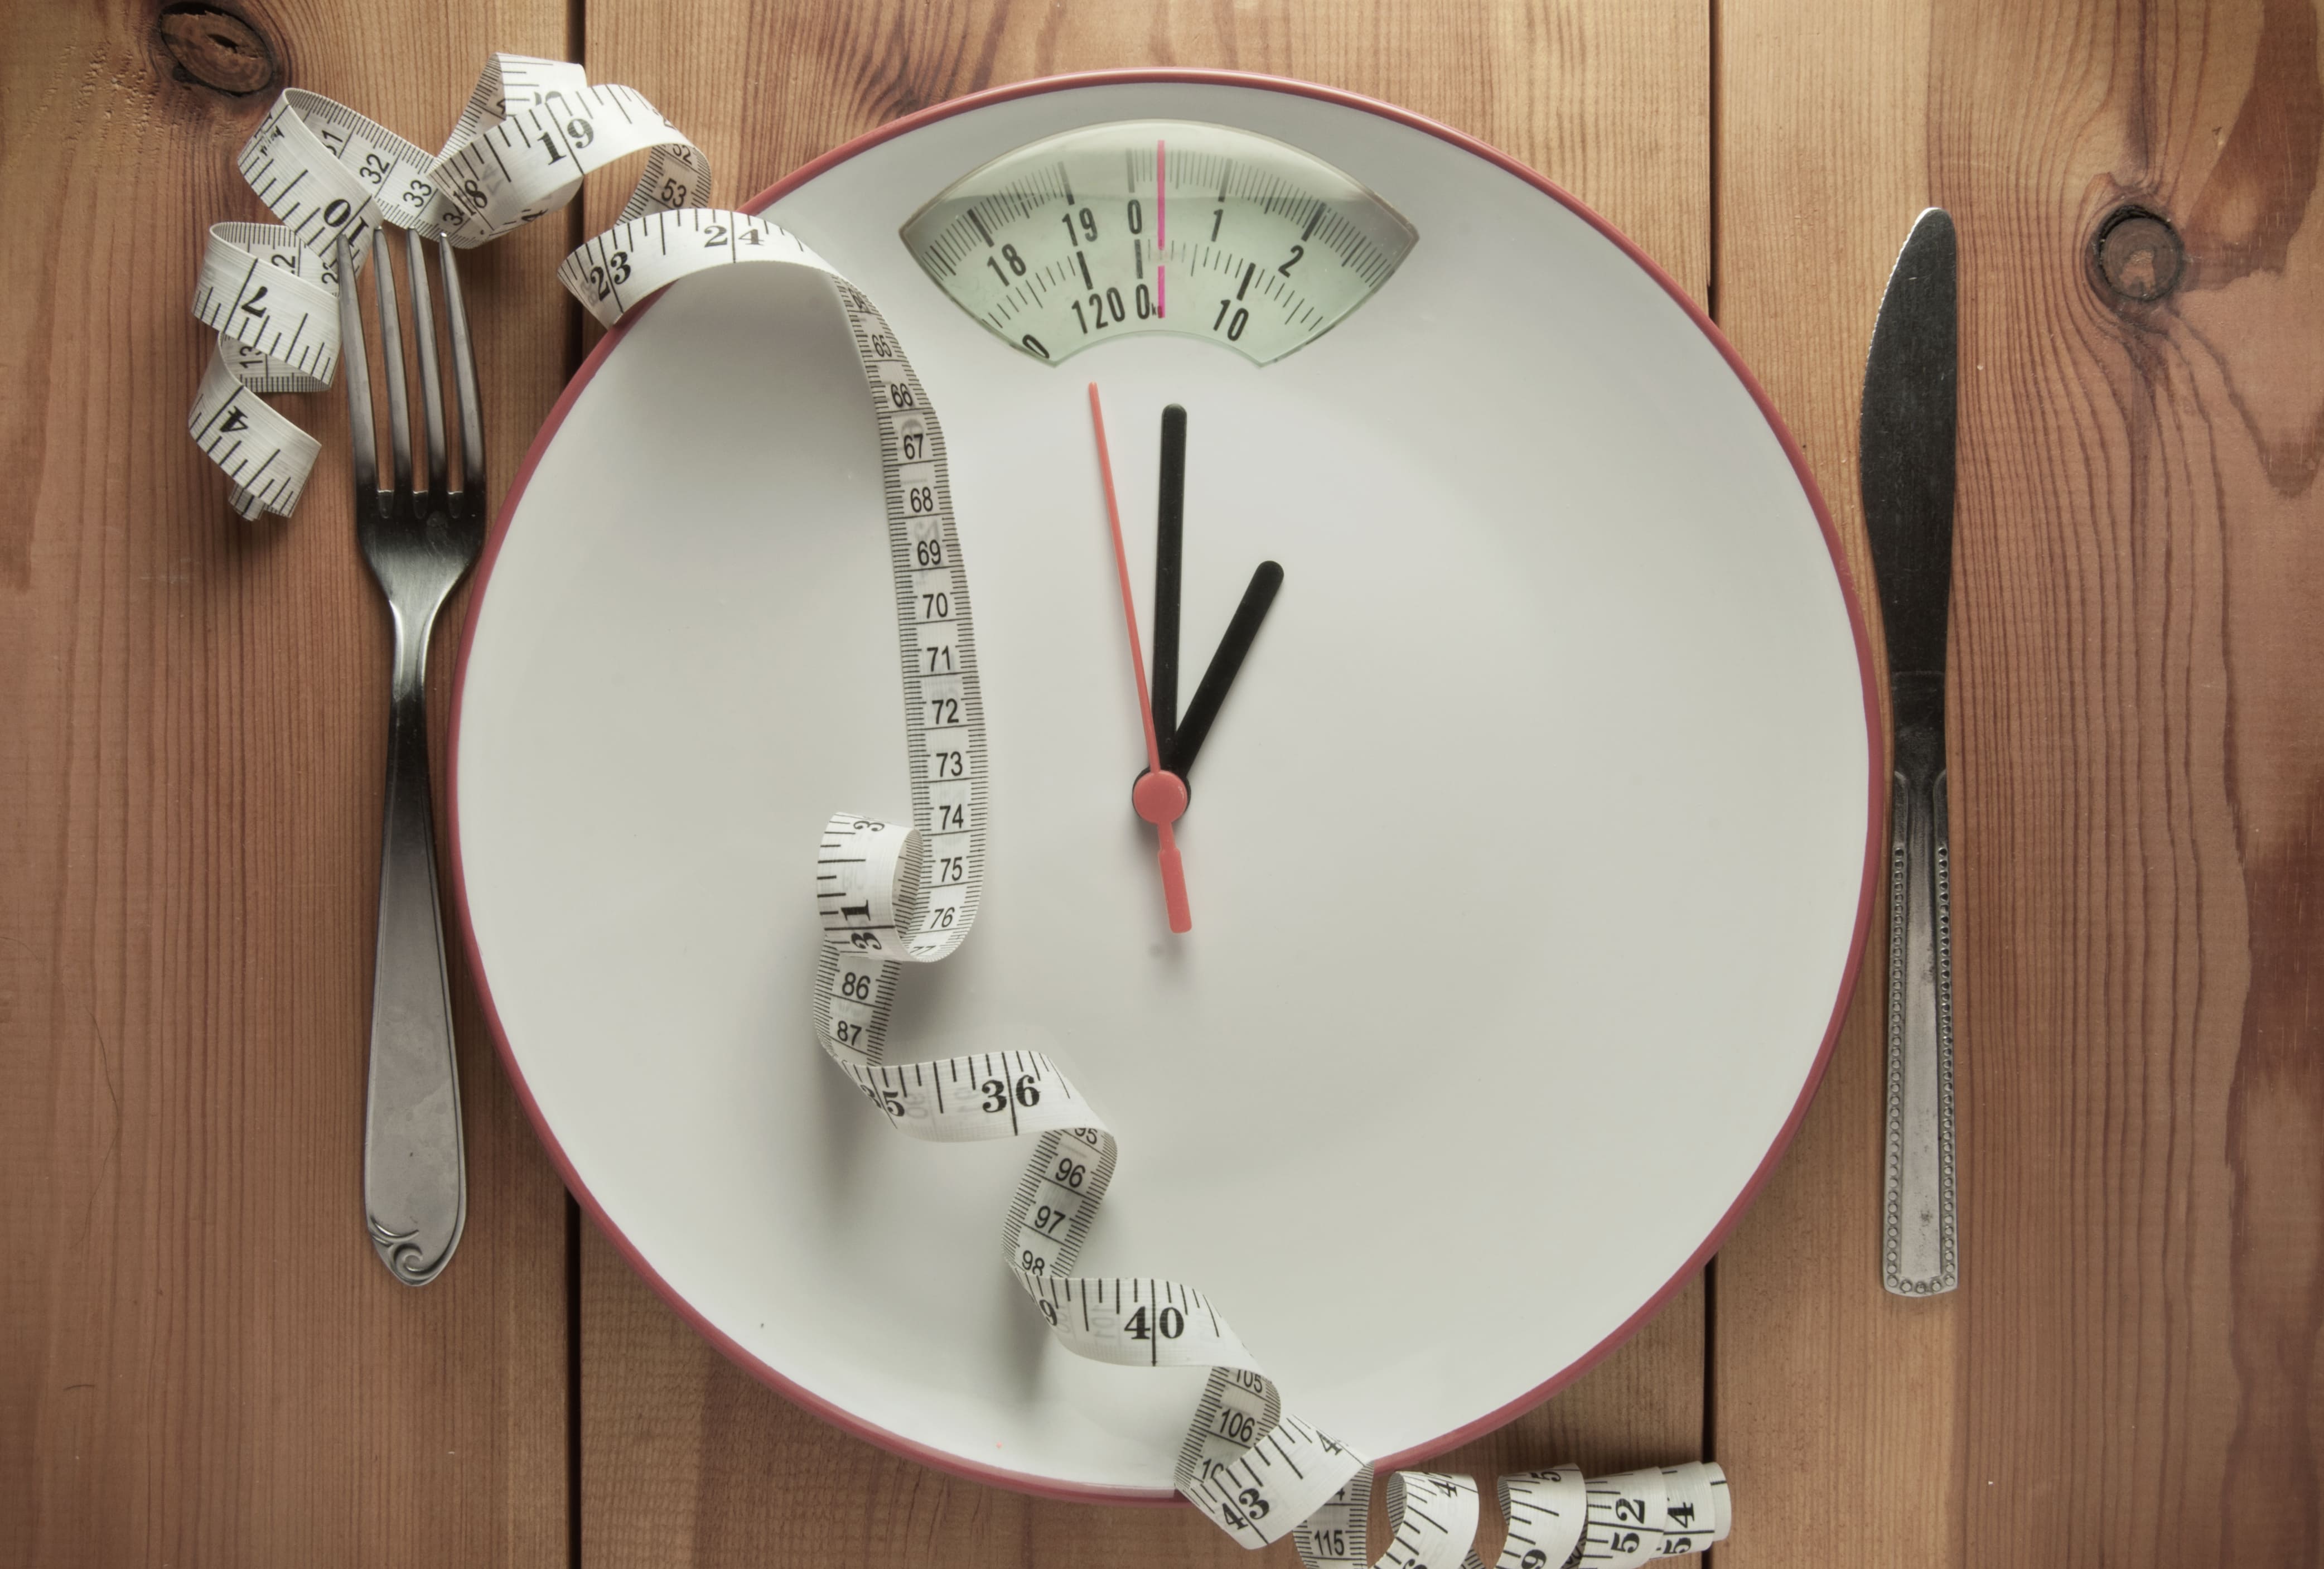 Transtornos alimentares e obesidade: entenda essa relação